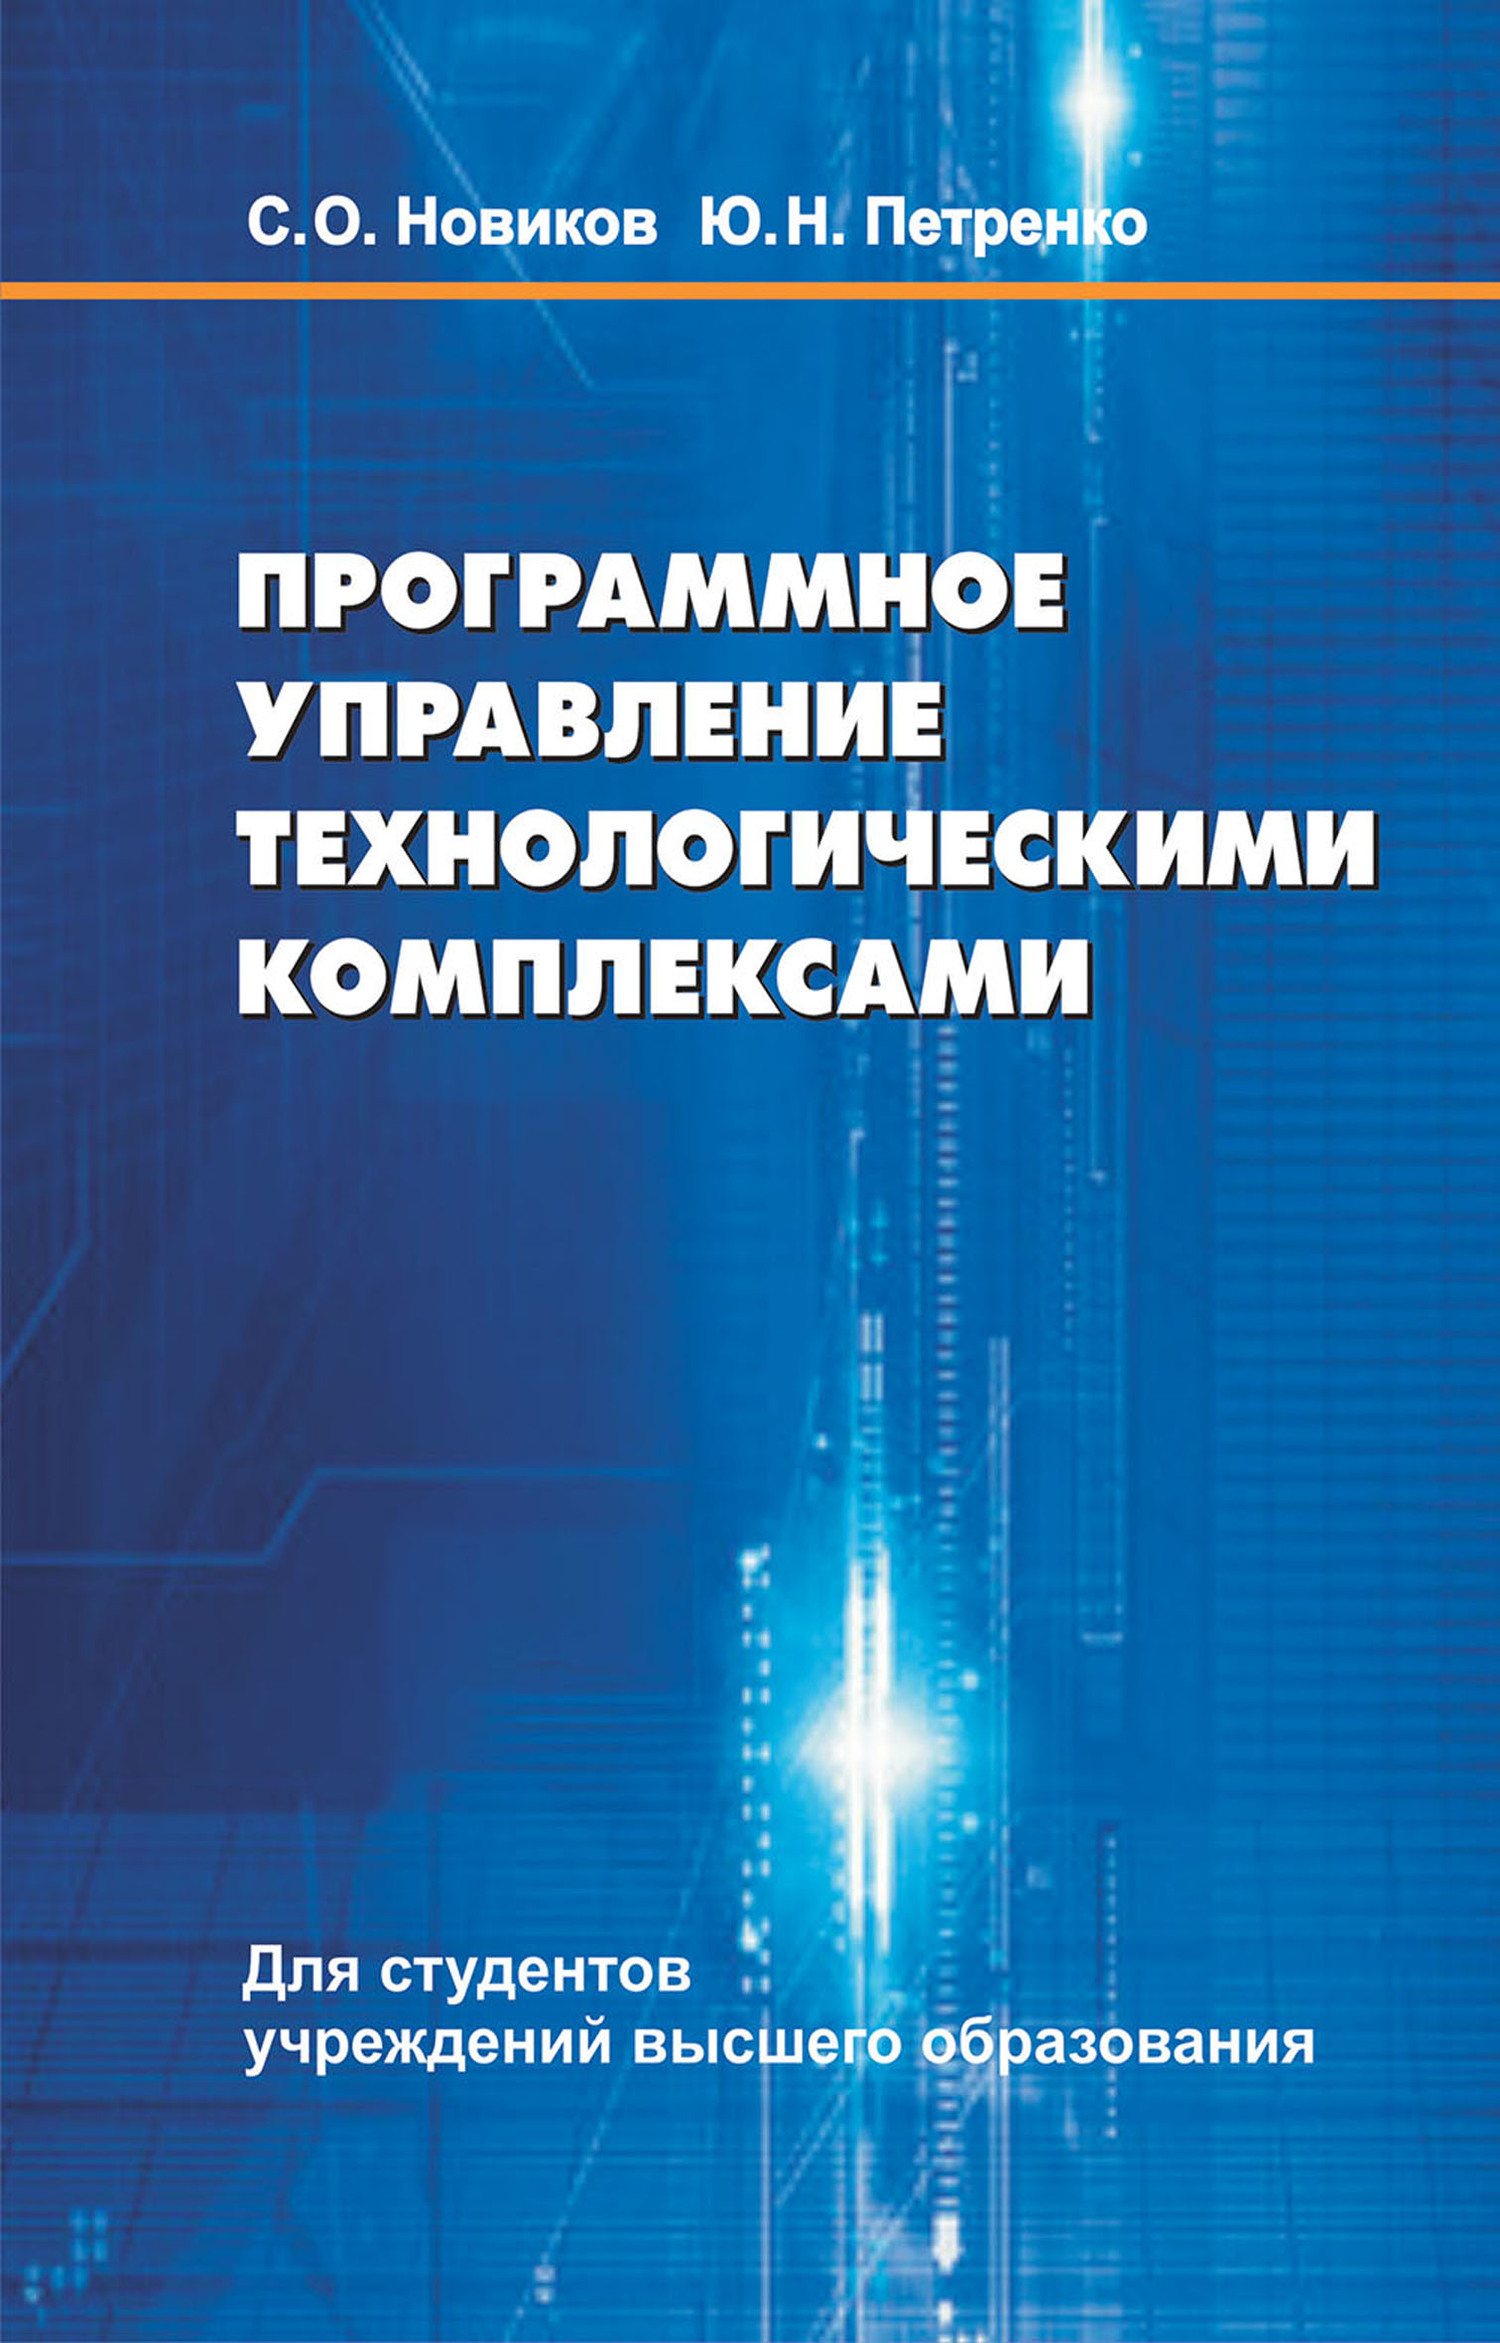 Книга  Программное управление технологическими комплексами созданная С. О. Новиков, Ю. Н. Петренко может относится к жанру автоматика и телемеханика, основы производства, программы, промышленность, учебники и пособия для вузов, эксплуатация промышленного оборудования. Стоимость электронной книги Программное управление технологическими комплексами с идентификатором 48895322 составляет 490.00 руб.